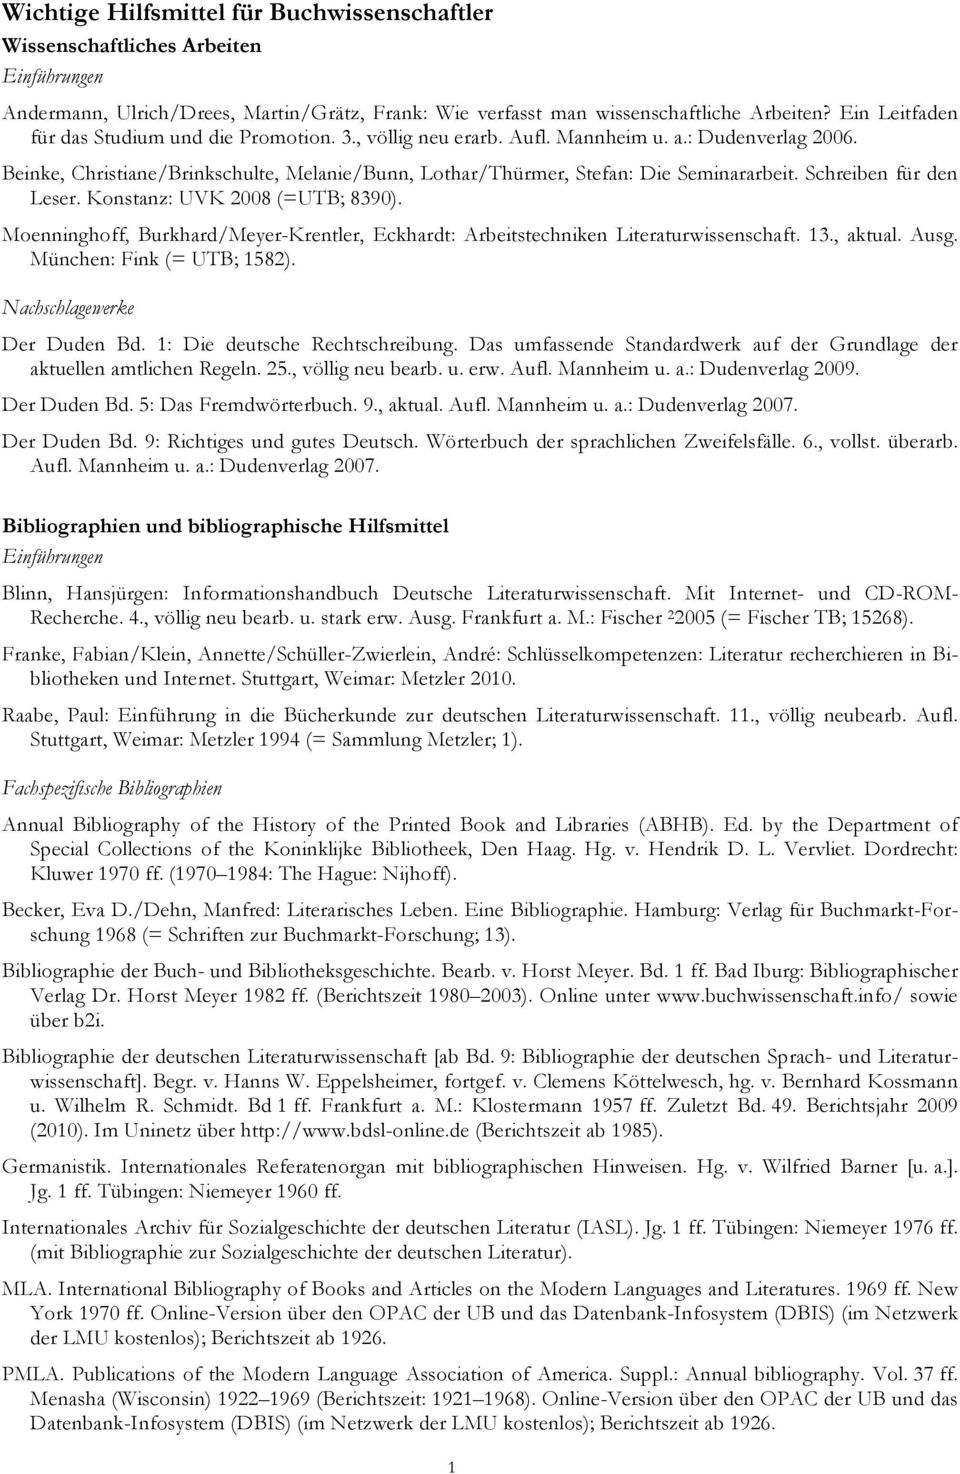 Schreiben für den Leser. Konstanz: UVK 2008 (=UTB; 8390). Moenninghoff, Burkhard/Meyer-Krentler, Eckhardt: Arbeitstechniken Literaturwissenschaft. 13., aktual. Ausg. München: Fink (= UTB; 1582).